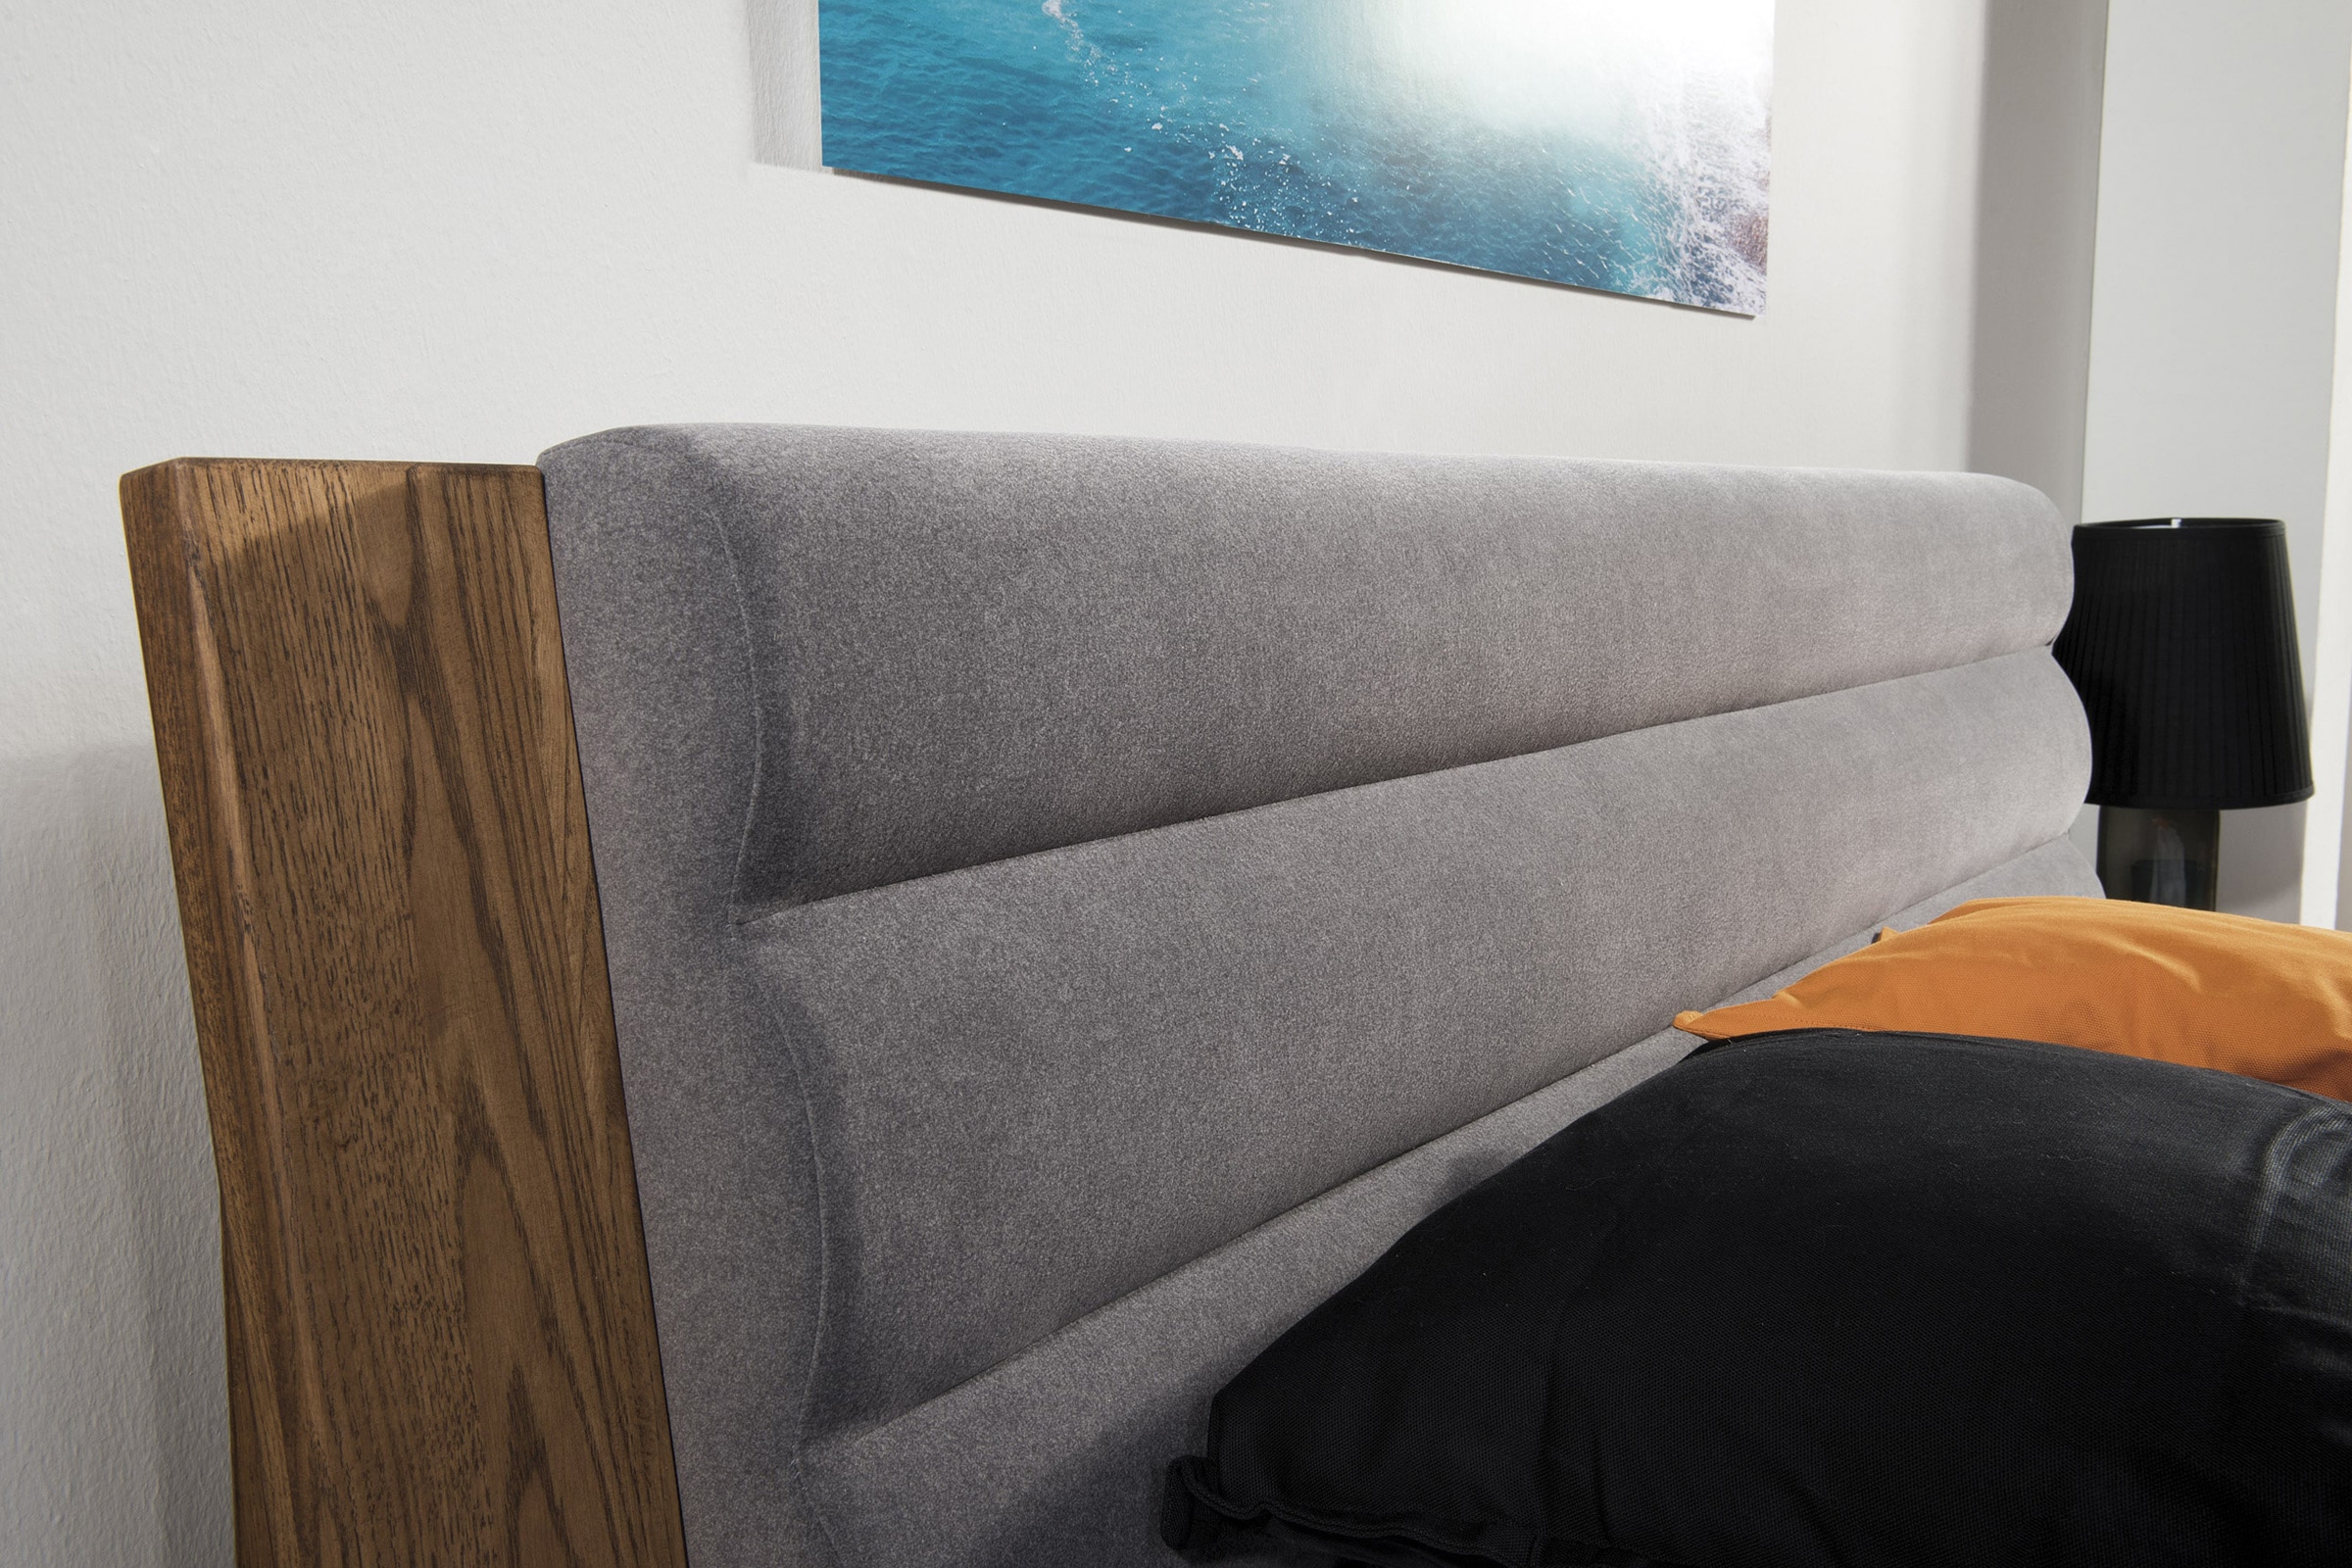 Łóżko drewniane Velvet 76 z tapicerowanym wezgłowiem 160x200 - szary / Nordic 116 / dąb rustical Łóżko drewniane Velvet 76 z tapicerowanym wezgłowiem 160x200 - szary / Nordic 116 / dąb rustical